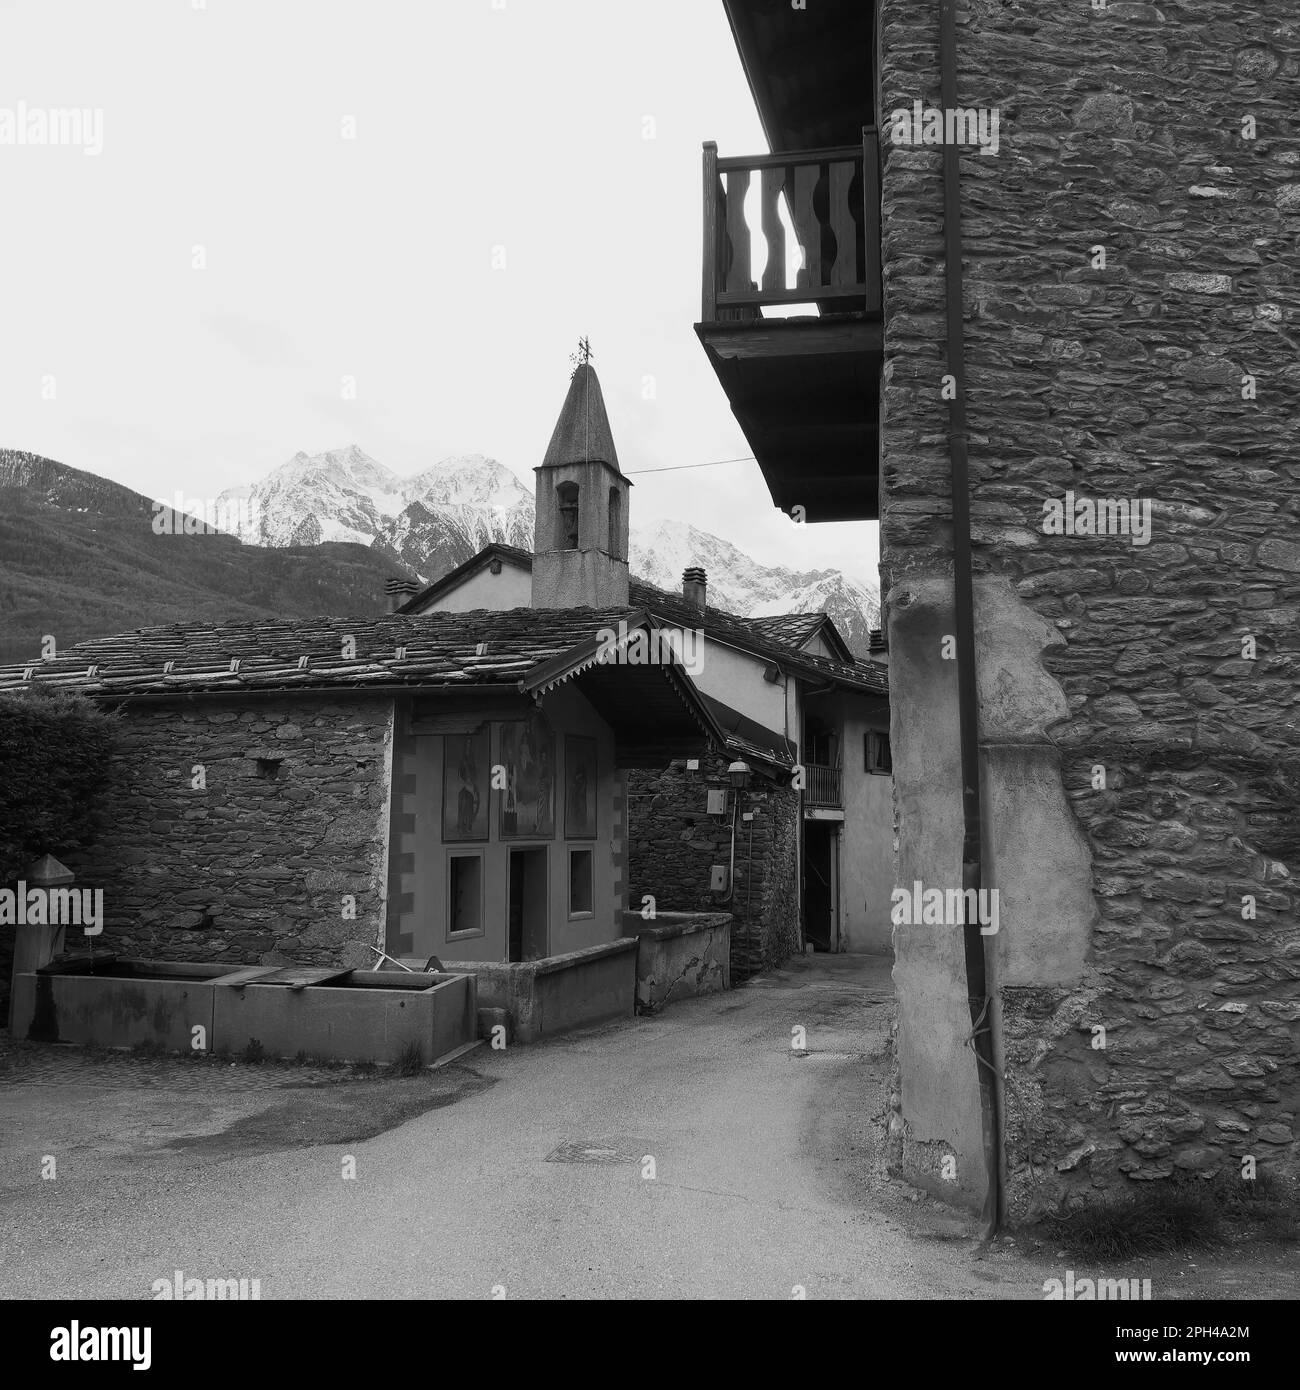 Dorf in Nus mit Kirche und Haus mit Balkon. Aosta-Tal, Italien. Wassertrog durch Vordergrund und schneebedeckte alpen dahinter. Schwarzweiß Stockfoto